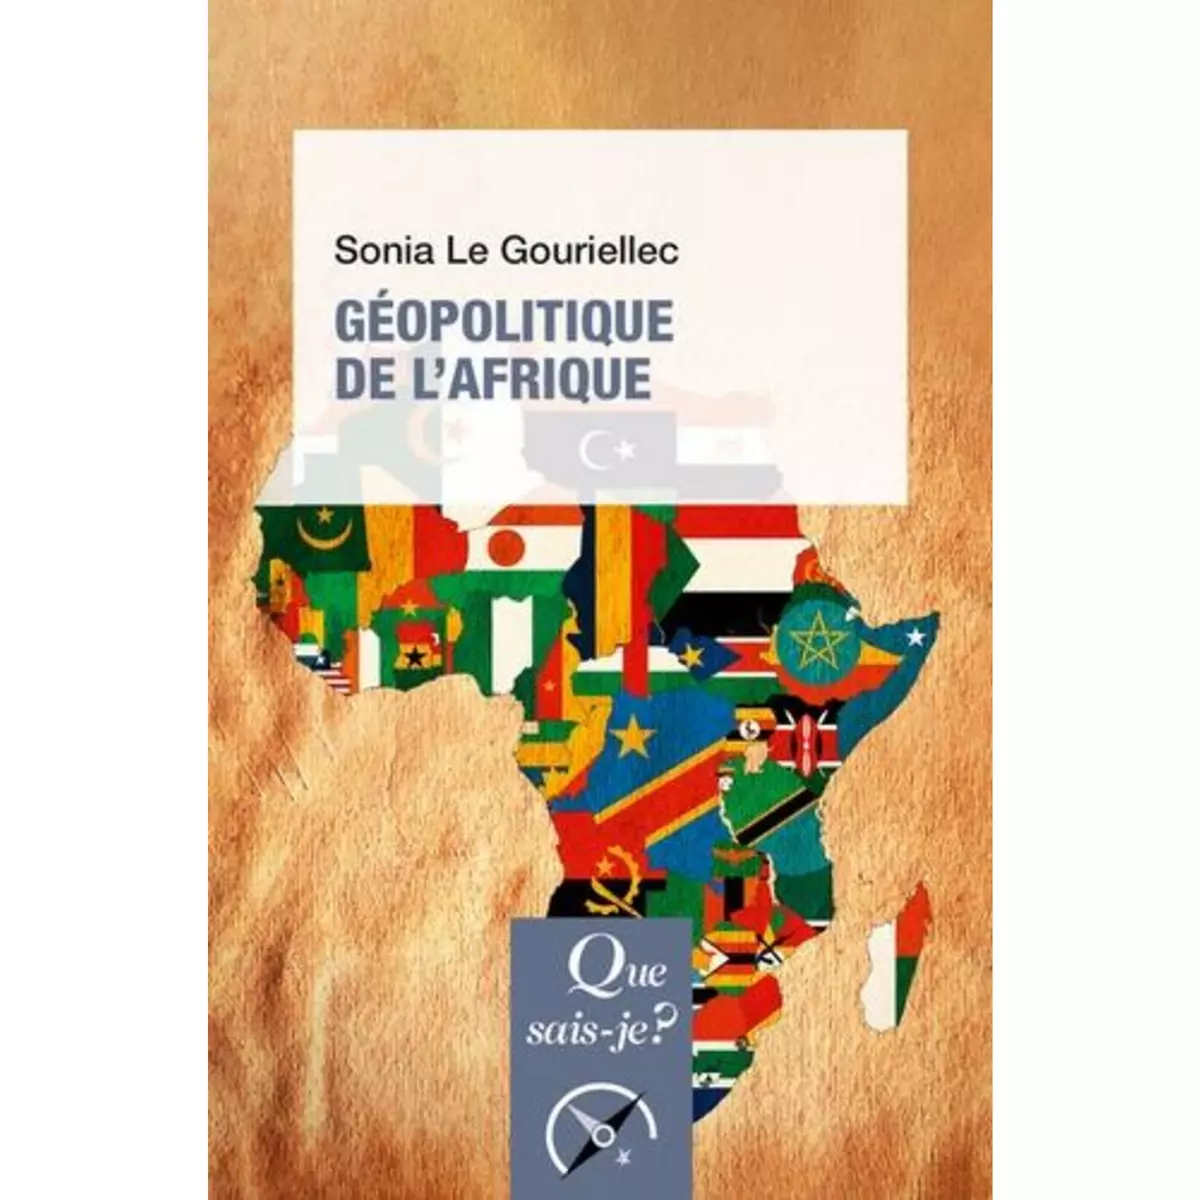  GEOPOLITIQUE DE L'AFRIQUE, Gouriellec Sonia le